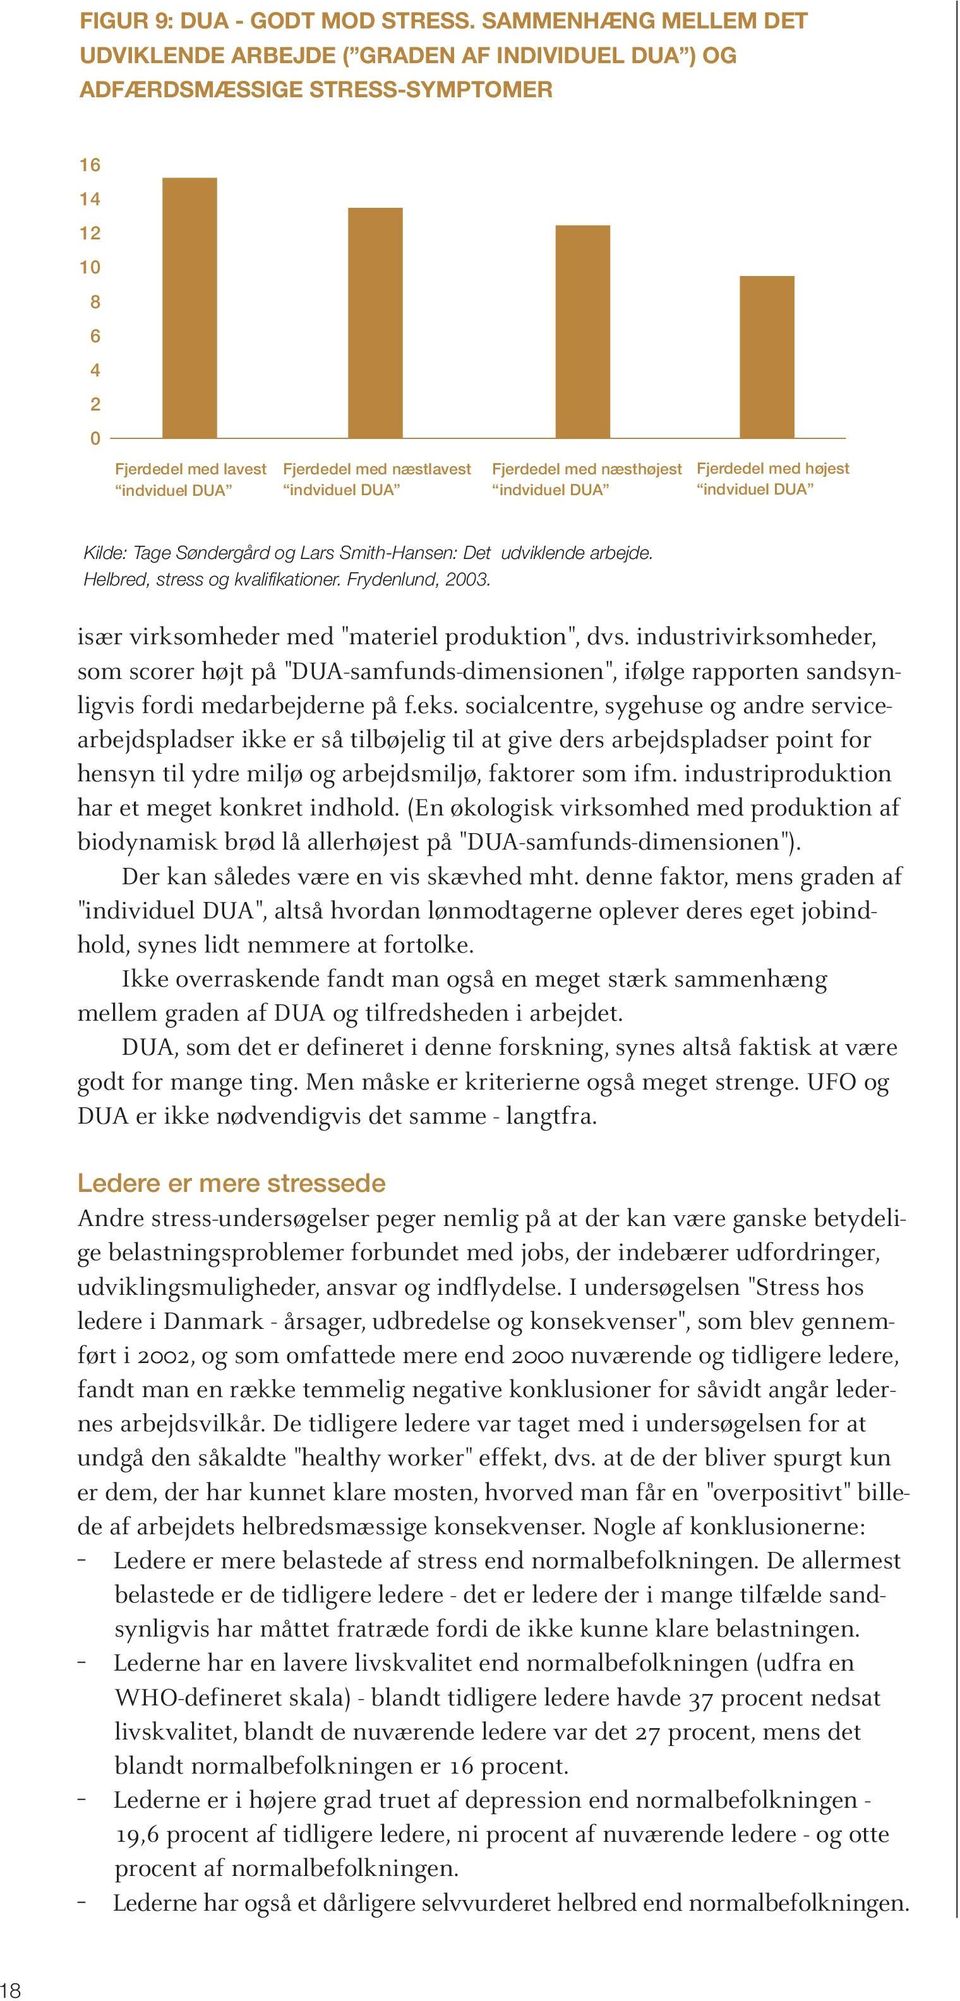 DUA Fjerdedel med næsthøjest indviduel DUA Fjerdedel med højest indviduel DUA Kilde: Tage Søndergård og Lars Smith-Hansen: Det udviklende arbejde. Helbred, stress og kvalifikationer. Frydenlund, 2003.